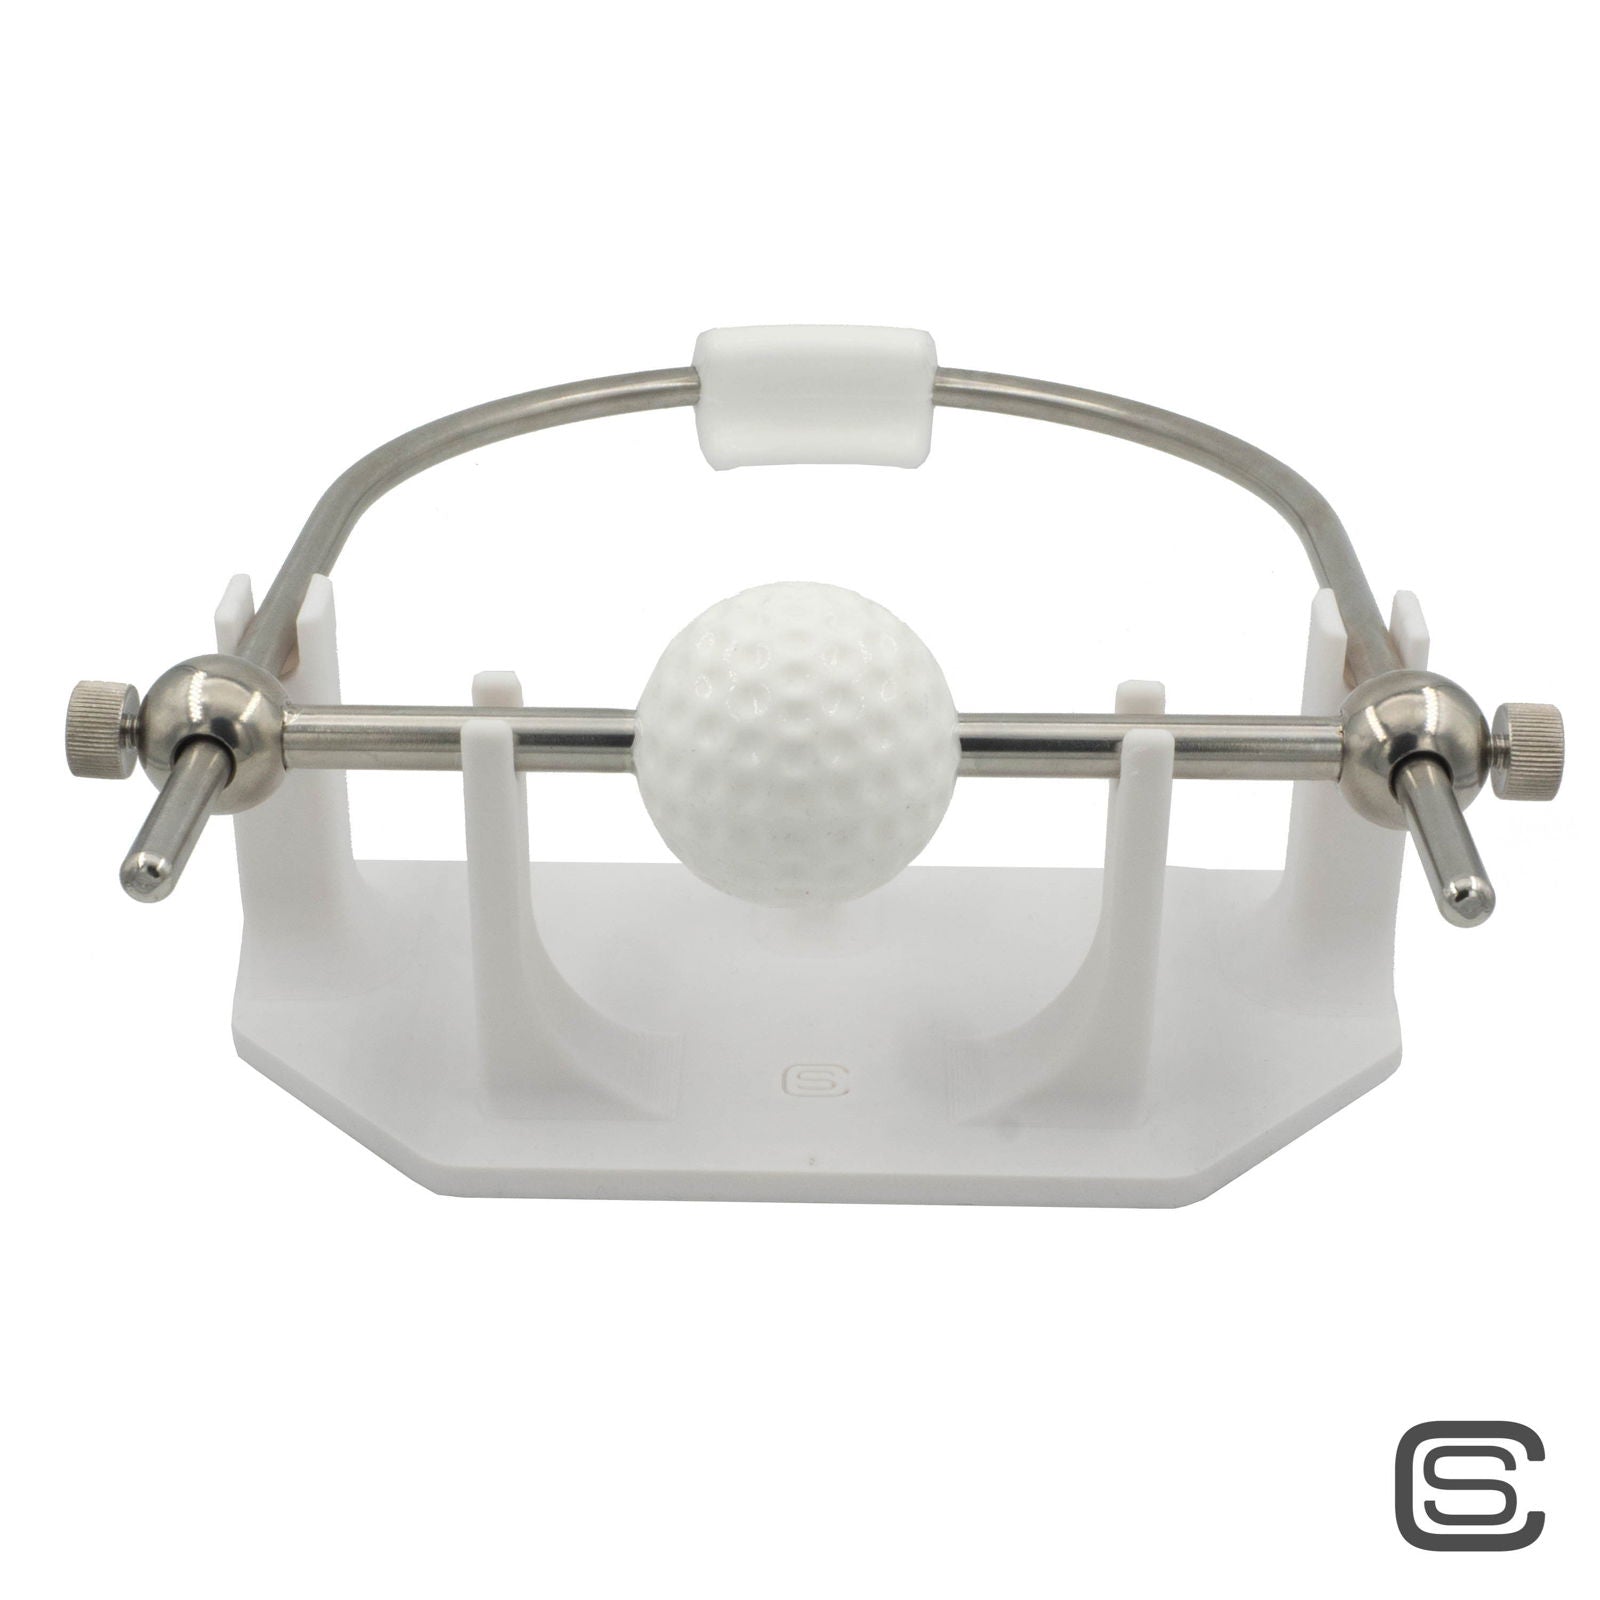 Ballknebel mit Stahlbügel - Design Golfball - silencilicone